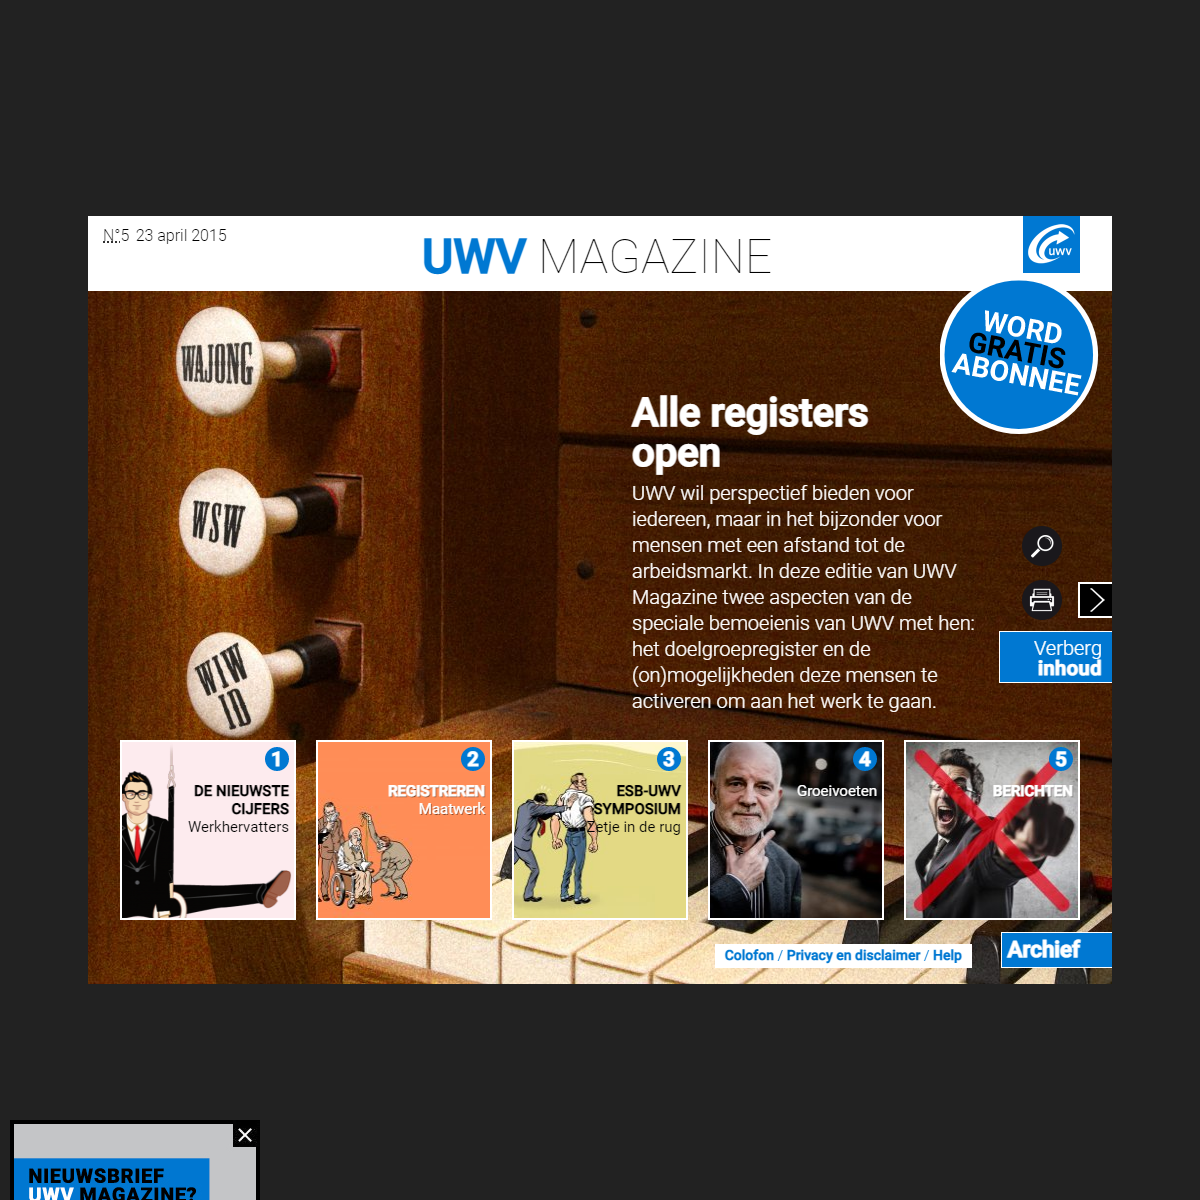 A complete backup of https://uwvmagazine.uwv.nl/edities/doelgroepen